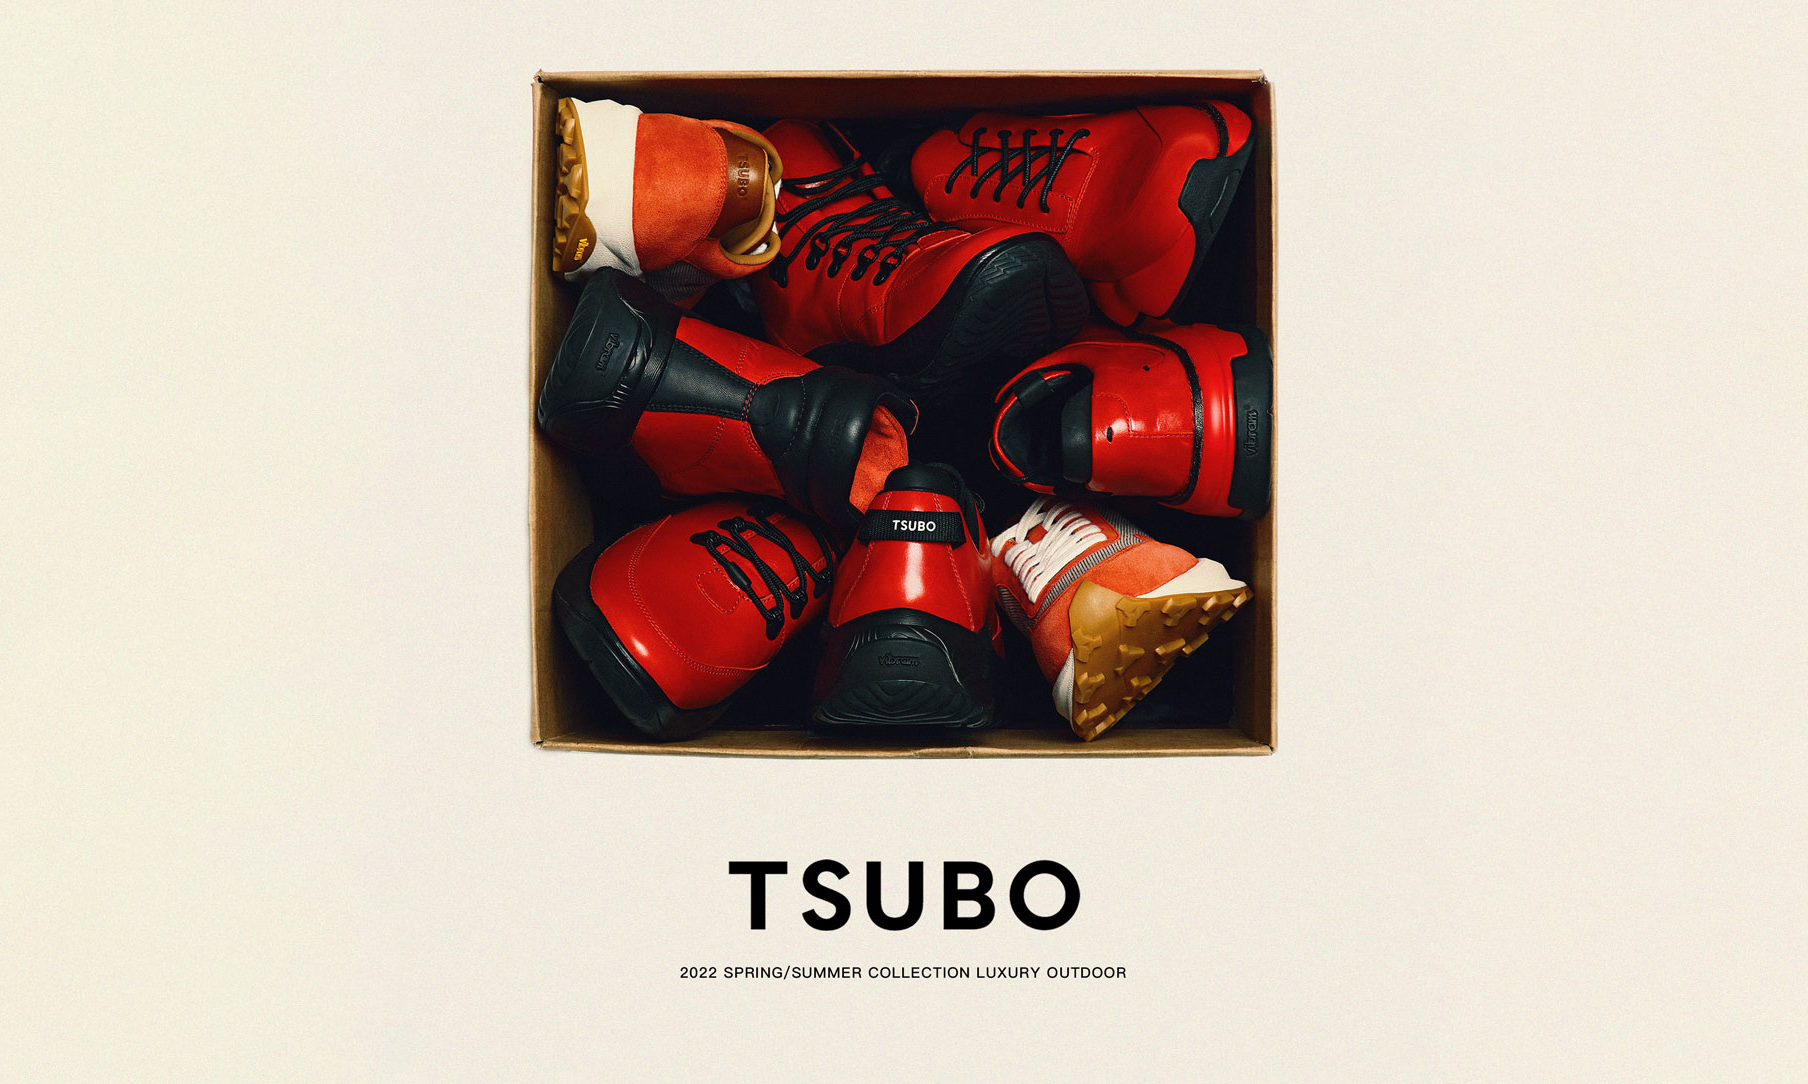 户外鞋履品牌 TSUBO 推出 2022 春夏系列鞋款